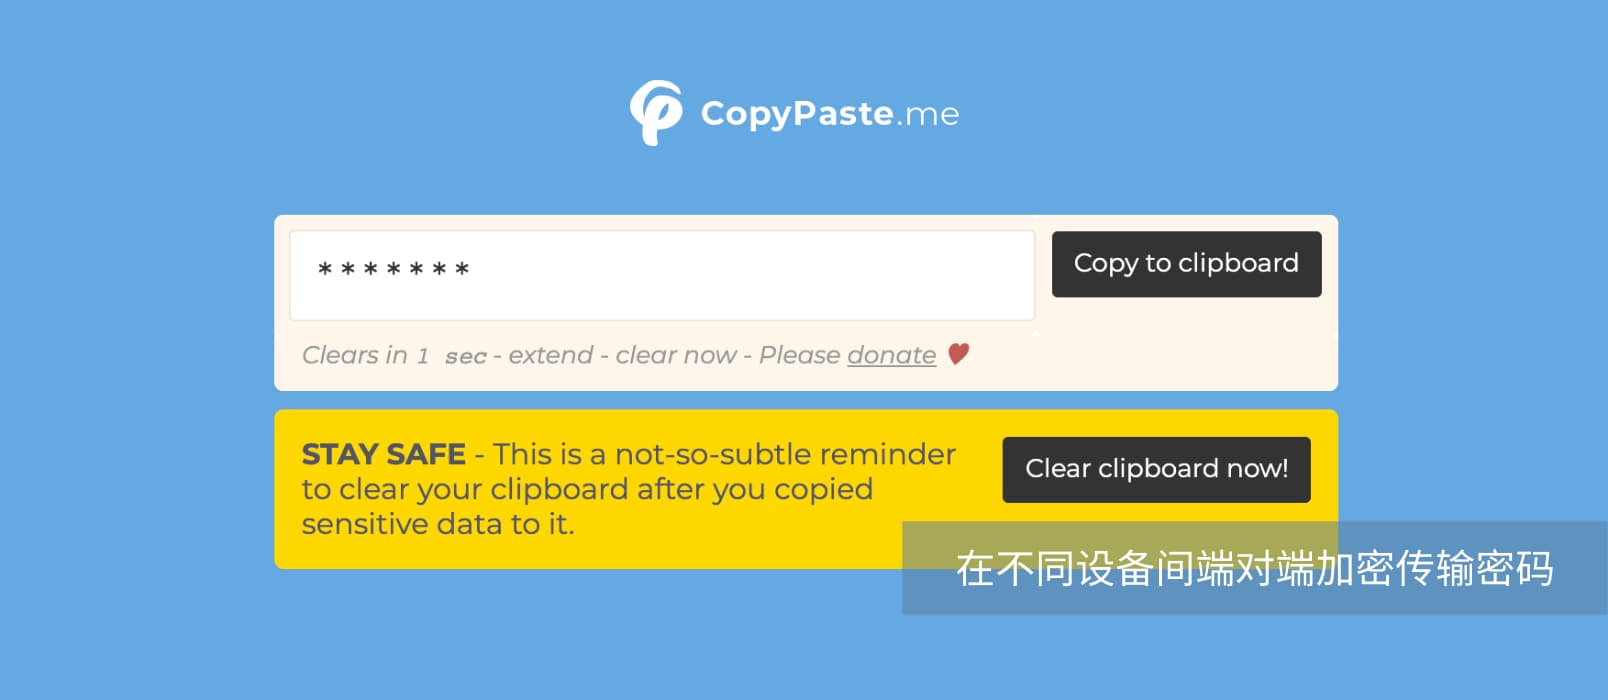 CopyPaste.me - 帮你安全的在不同设备间传输密码等敏感内容 1